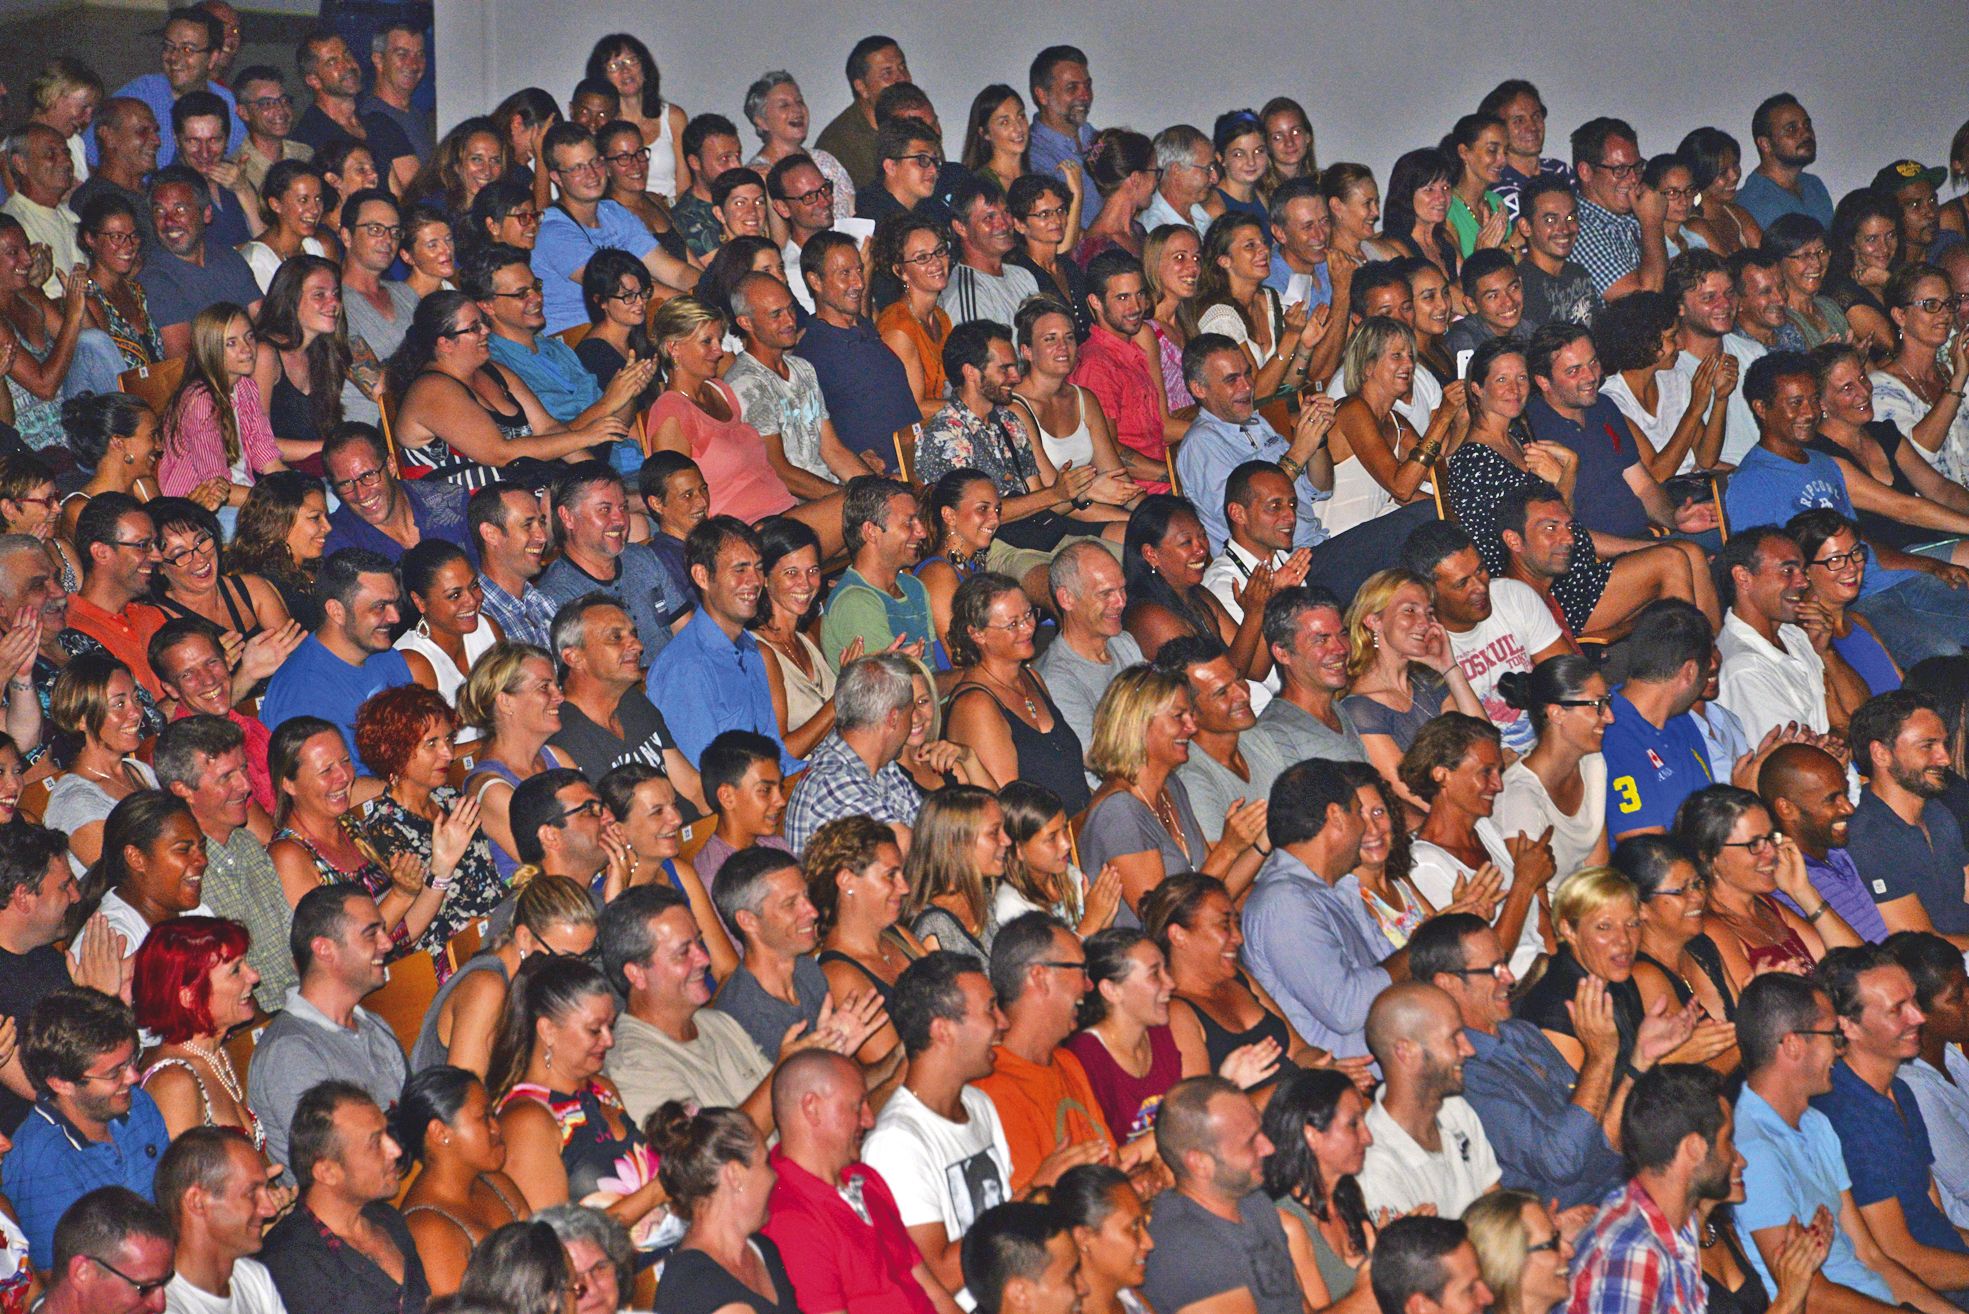 Environ 2 000 personnes étaient à l'Arène du Sud, samedi soir, pour le spectacle d'Elie Semoun.